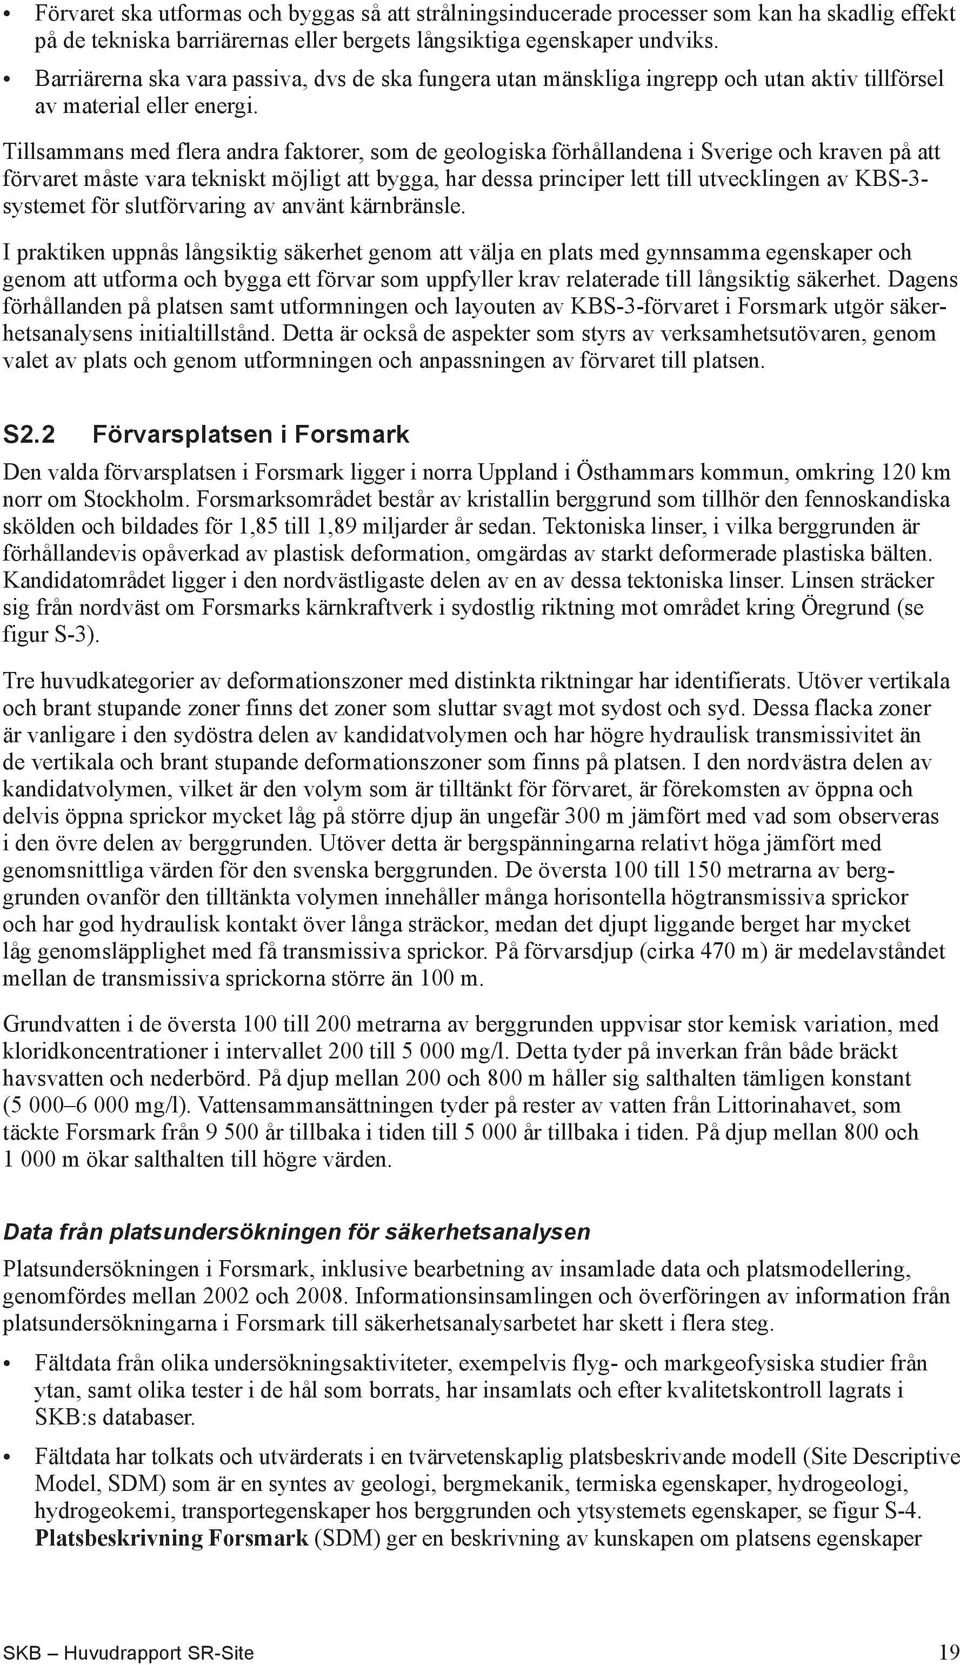 Tillsammans med flera andra faktorer, som de geologiska förhållandena i Sverige och kraven på att förvaret måste vara tekniskt möjligt att bygga, har dessa principer lett till utvecklingen av KBS-3-